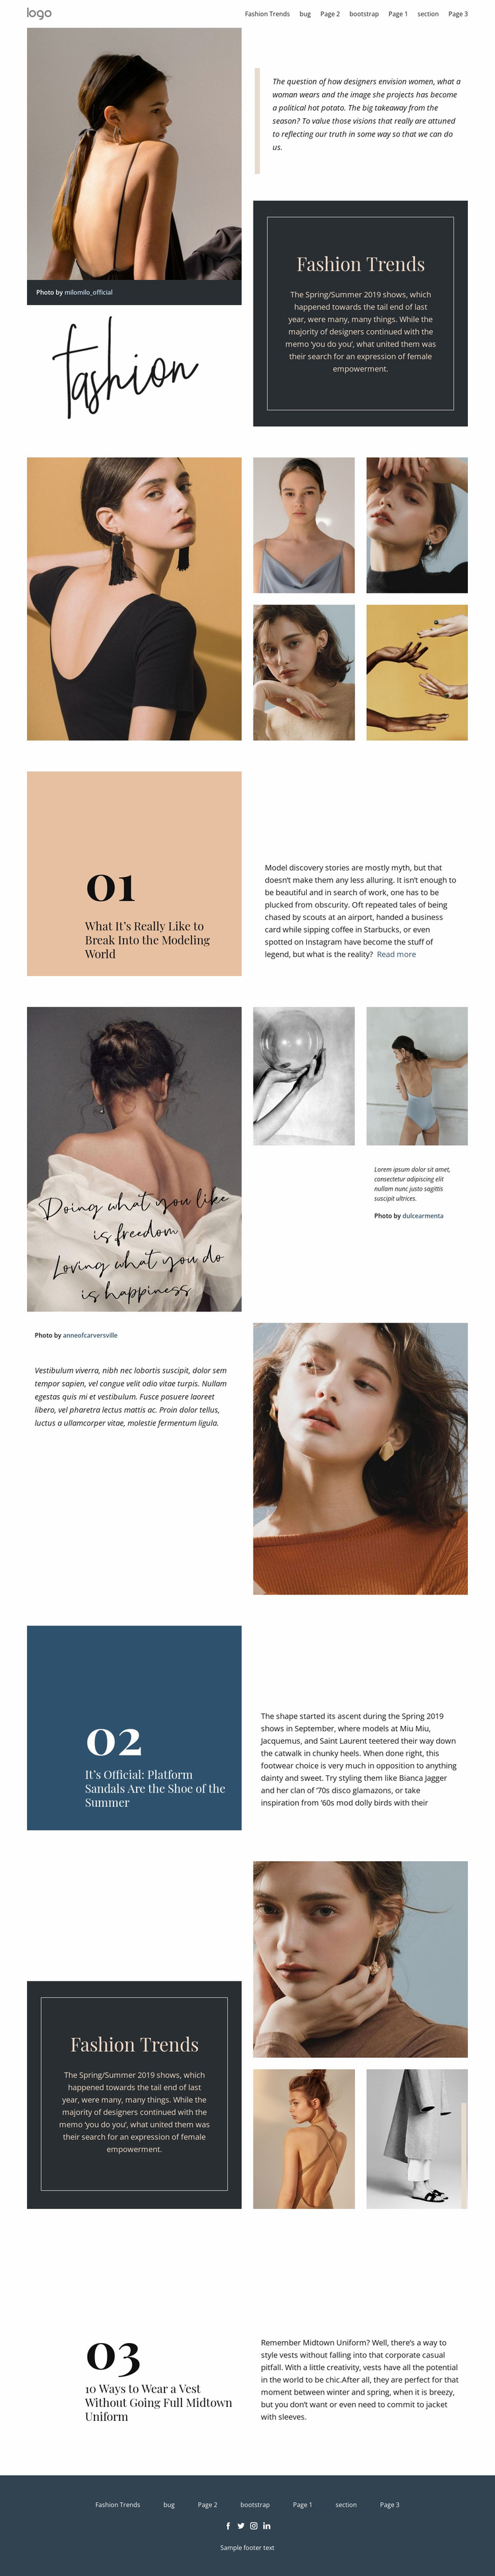 Designer vision of fashion Website Design